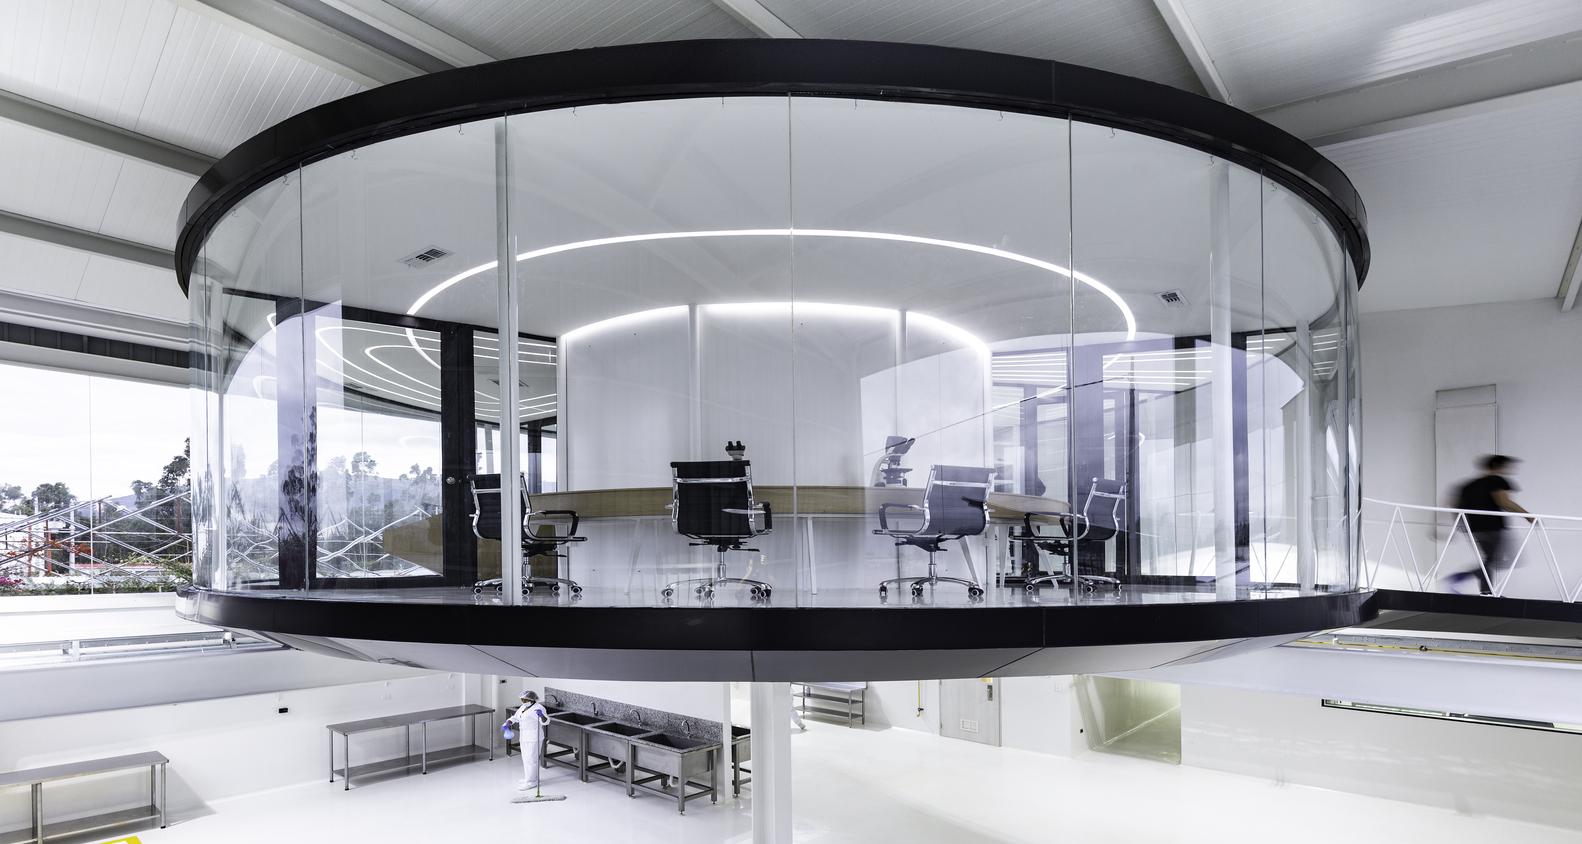 【猶如置身於科幻電影】 厄瓜多爾創新實驗室 以未來風格帶來靈感